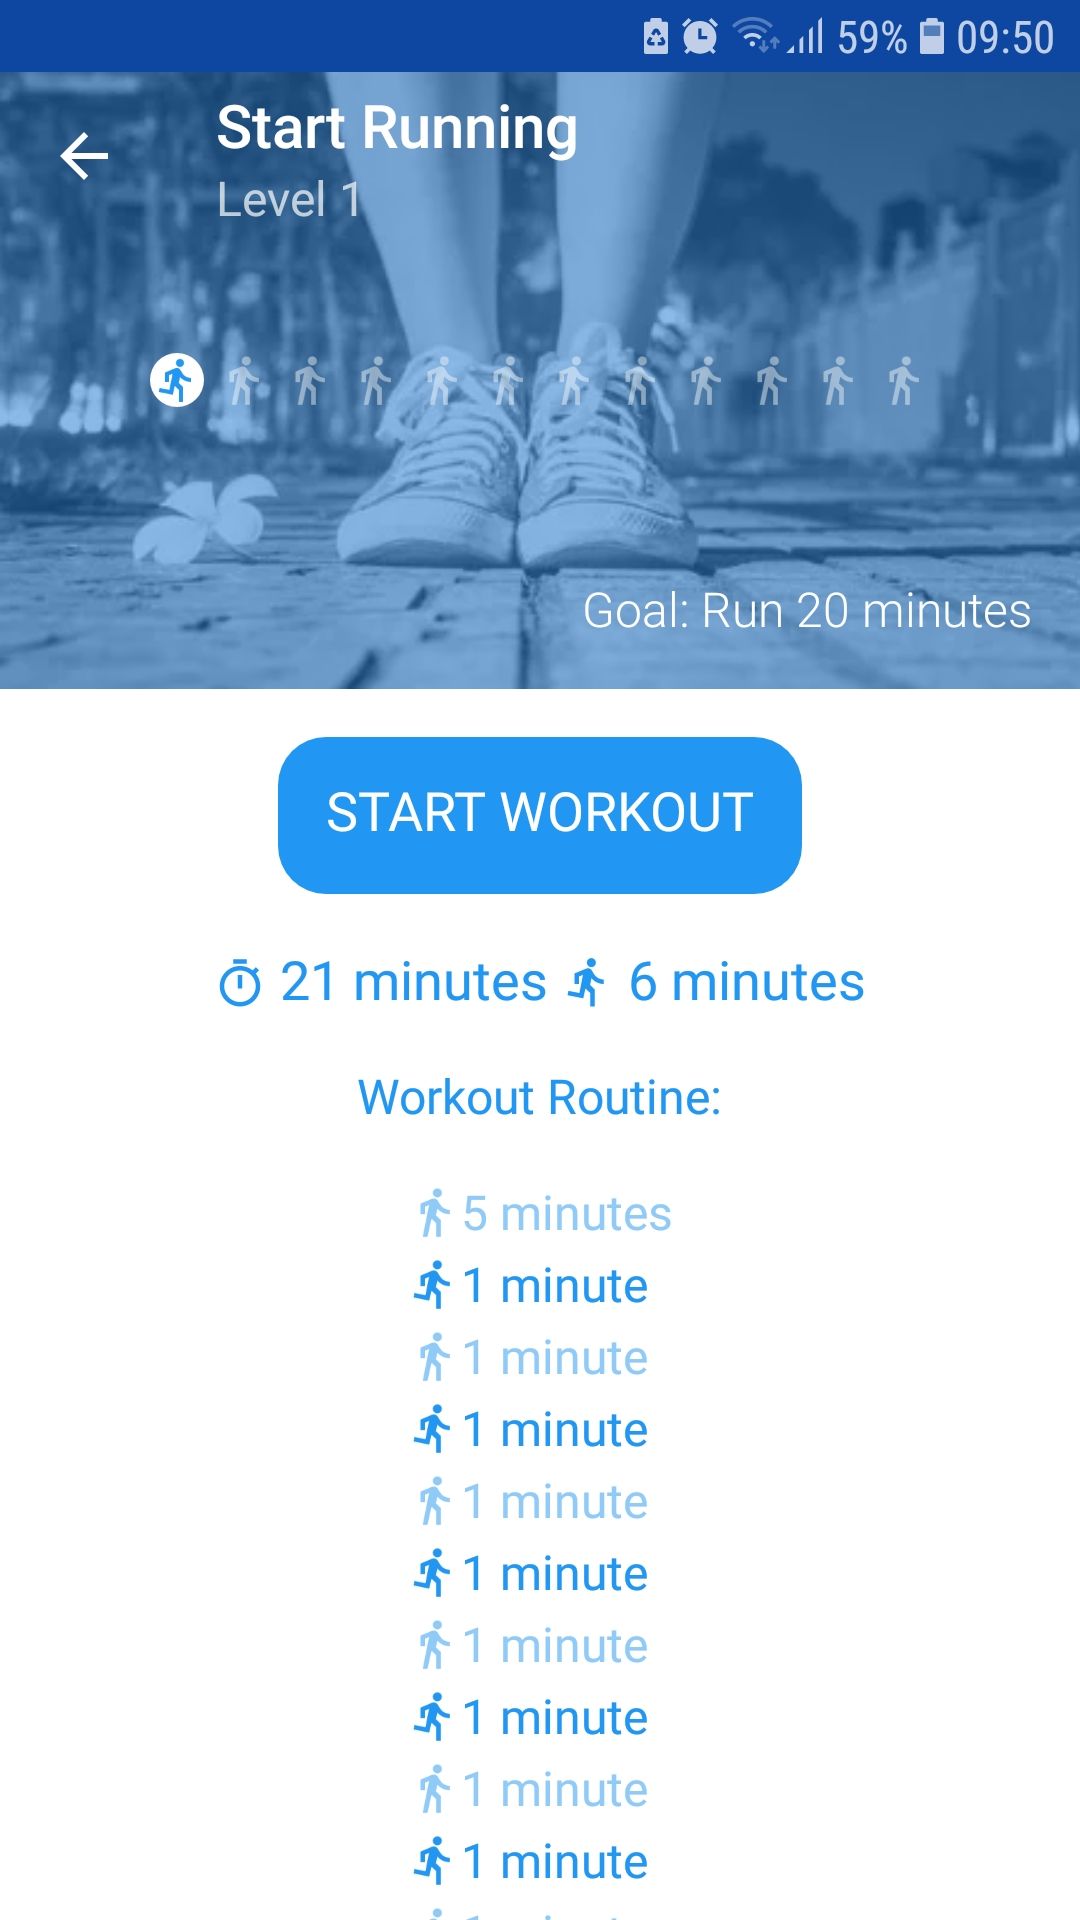 Start Running for beginners mobile fitness app level 1